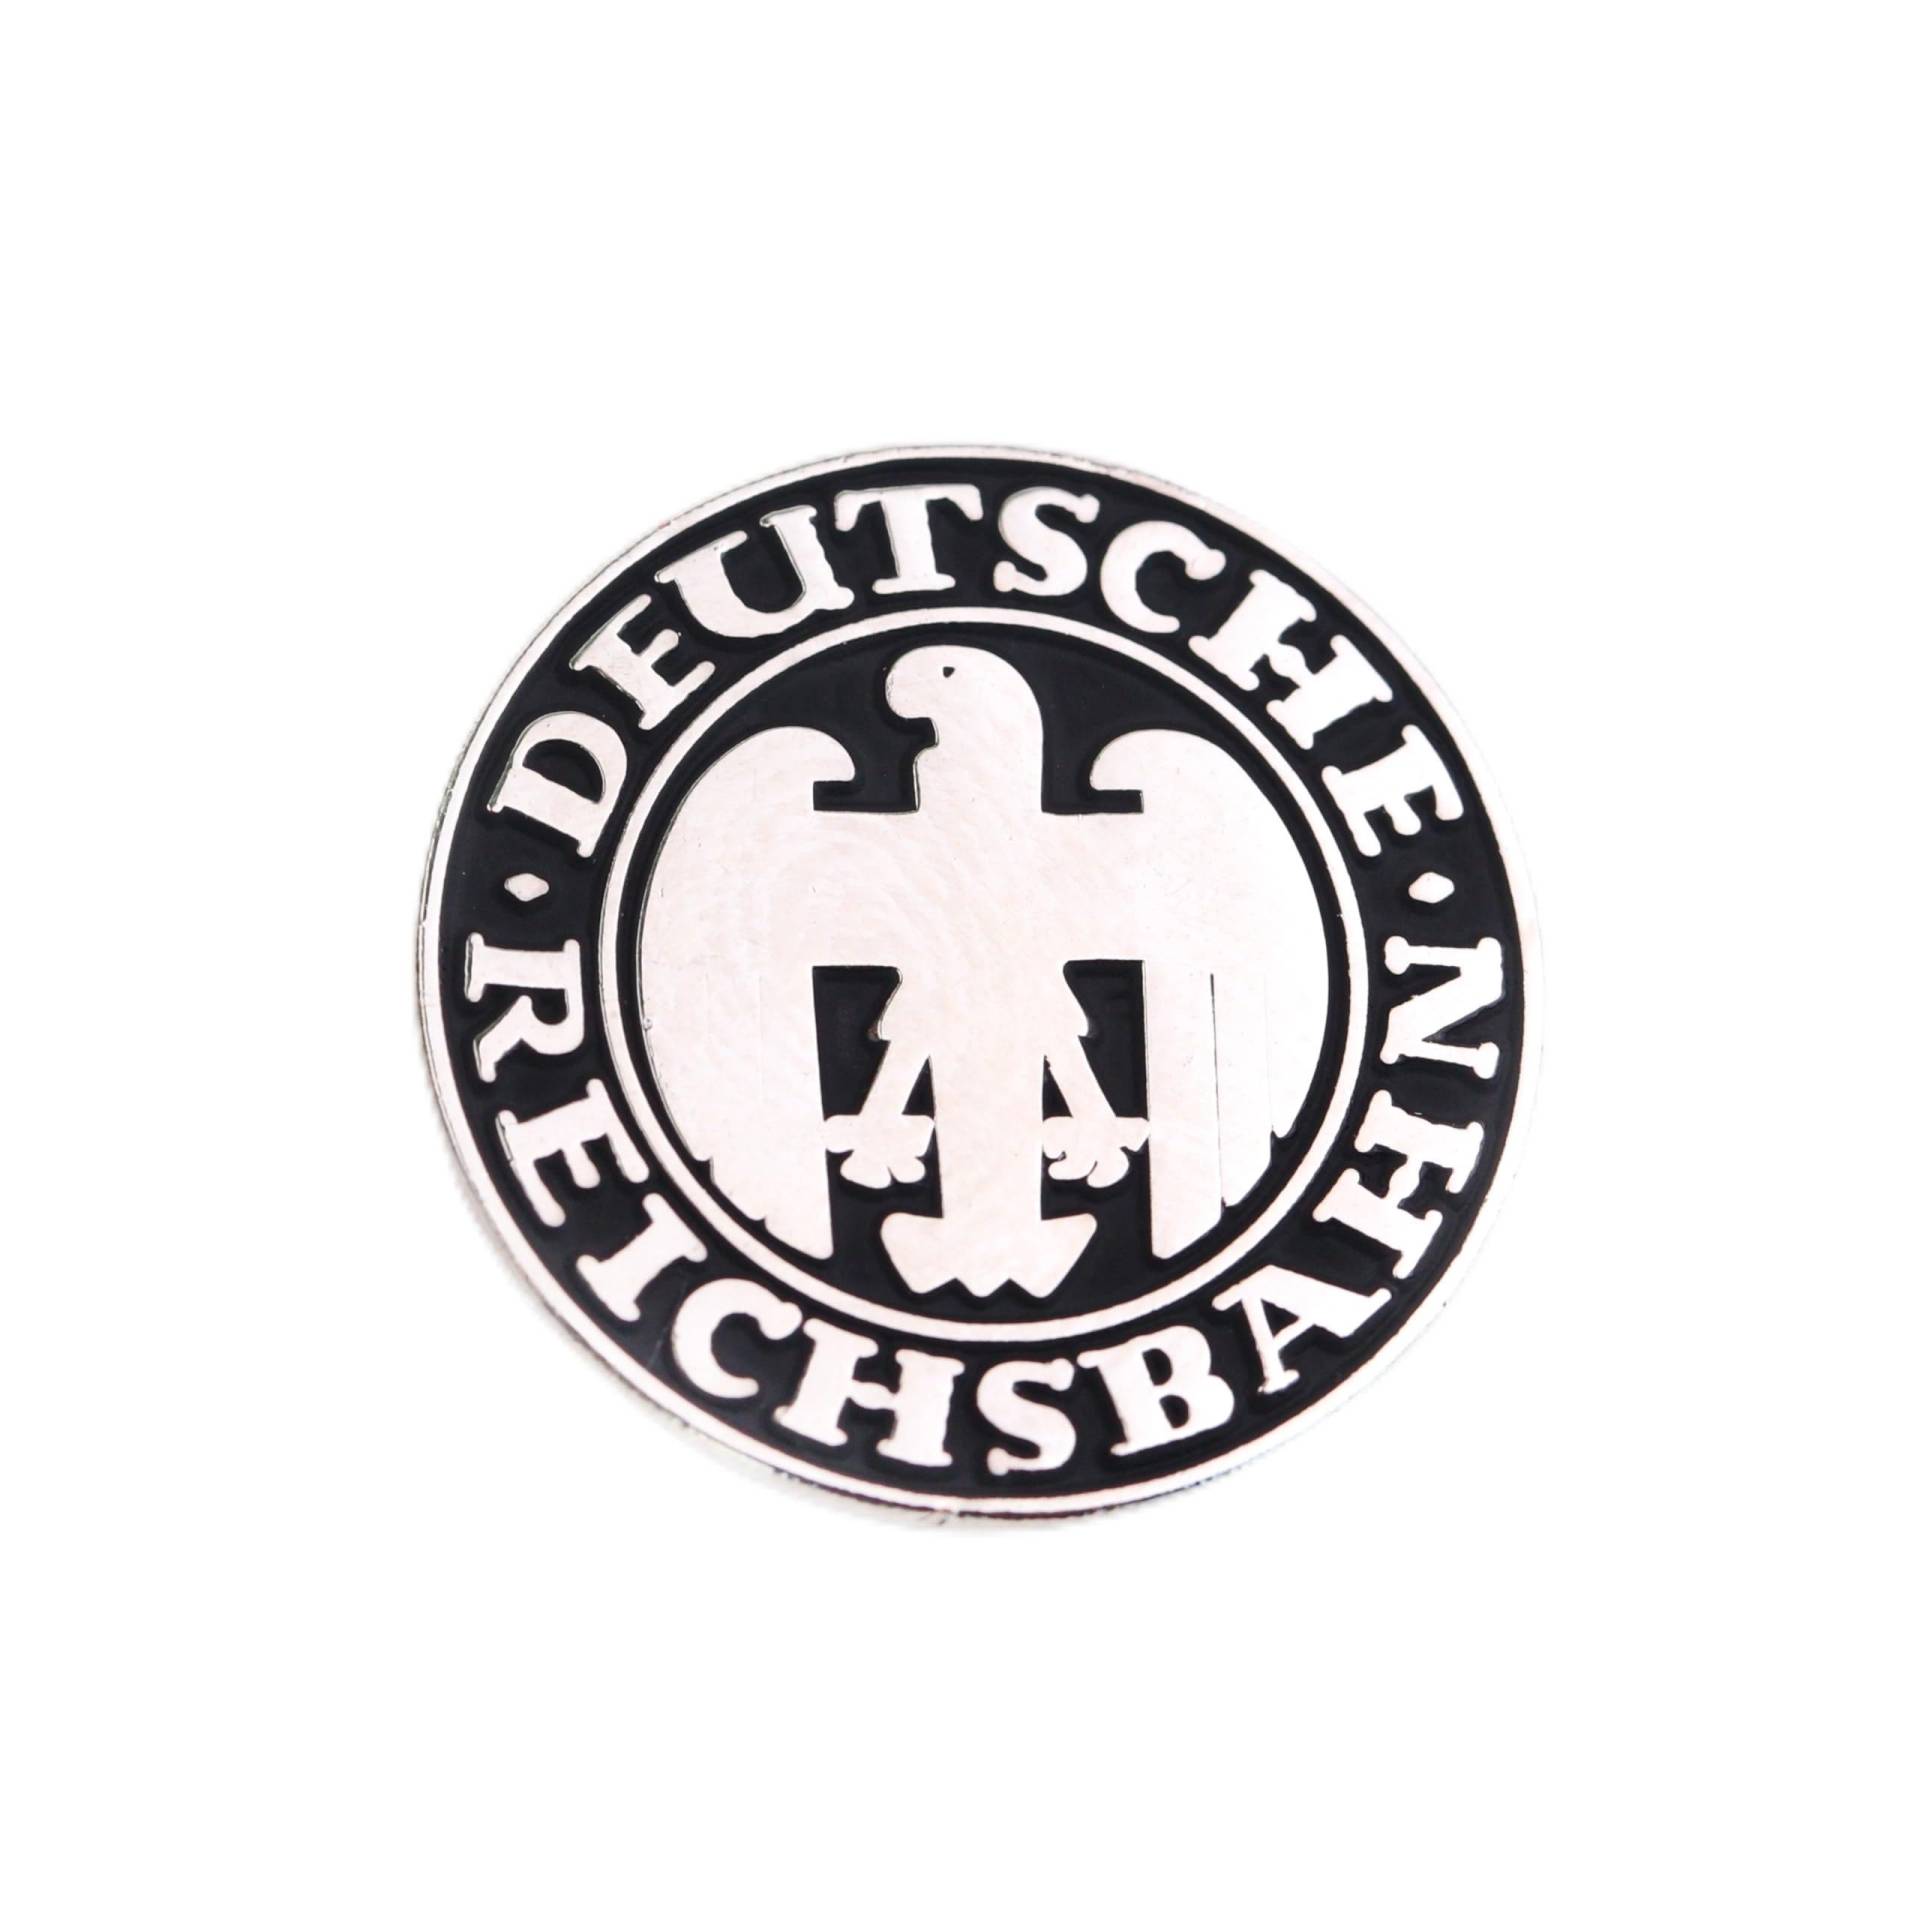 Zunftbedarfde Pin Anstecker Deutsche Reichsbahngesellschaft (DRG) von Zunftbedarfde